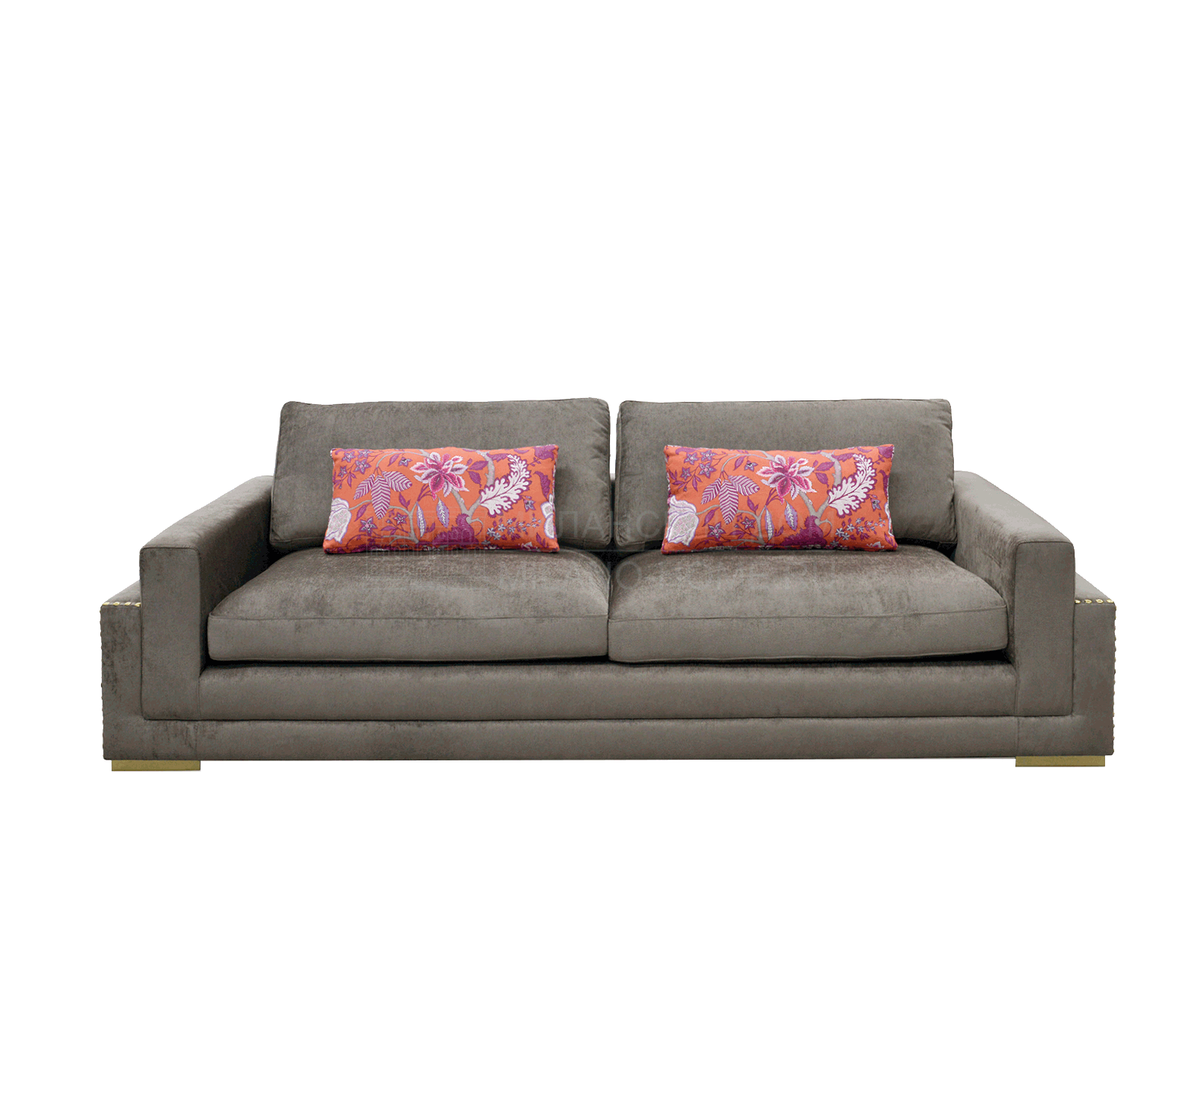 Прямой диван Minesota sofa из Португалии фабрики FRATO